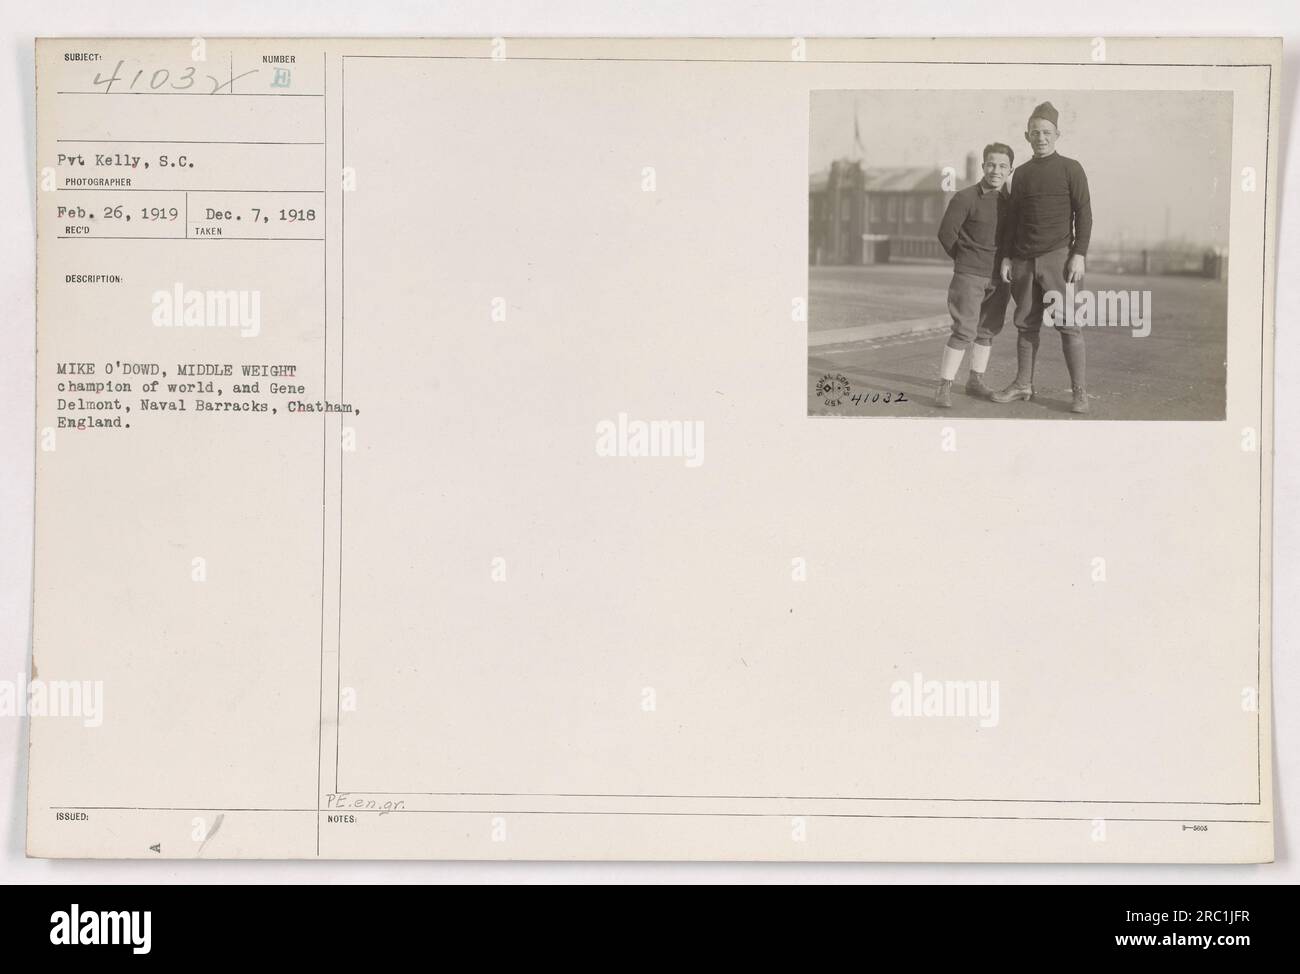 Il campione mondiale dei pesi massimi Mike o'Dowd (a sinistra) e Gene Delmont (a destra), di stanza presso la Naval Barracks di Chatham, in Inghilterra, il 26 febbraio 1919. O'Dowd era un campione dei pesi medi, ed entrambi erano in servizio nell'esercito durante la prima guerra mondiale Questa fotografia è un comunicato ufficiale dell'Ufficio relazioni pubbliche. Foto Stock